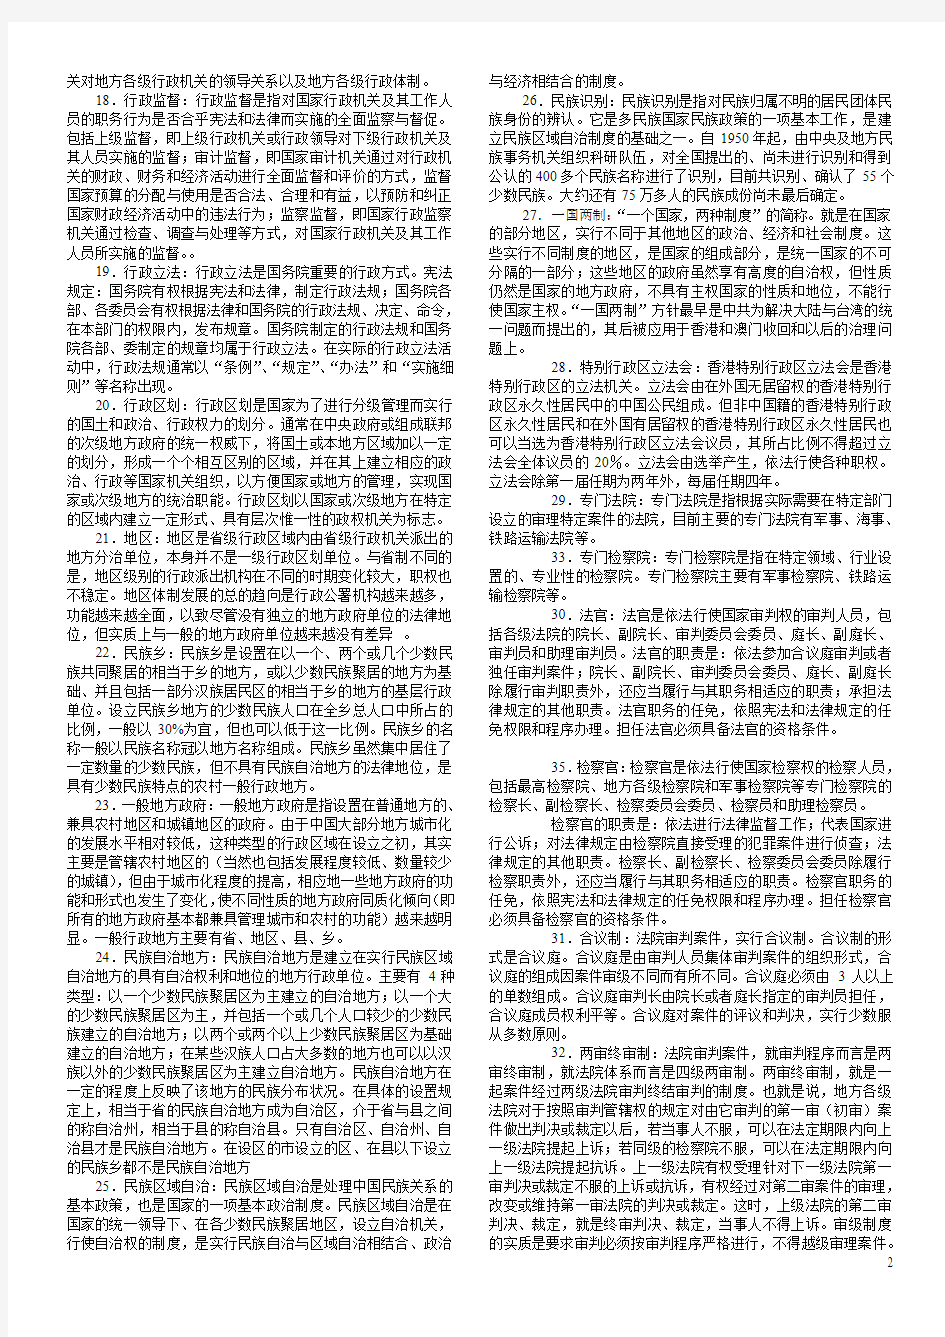 中国当代政治名词解释